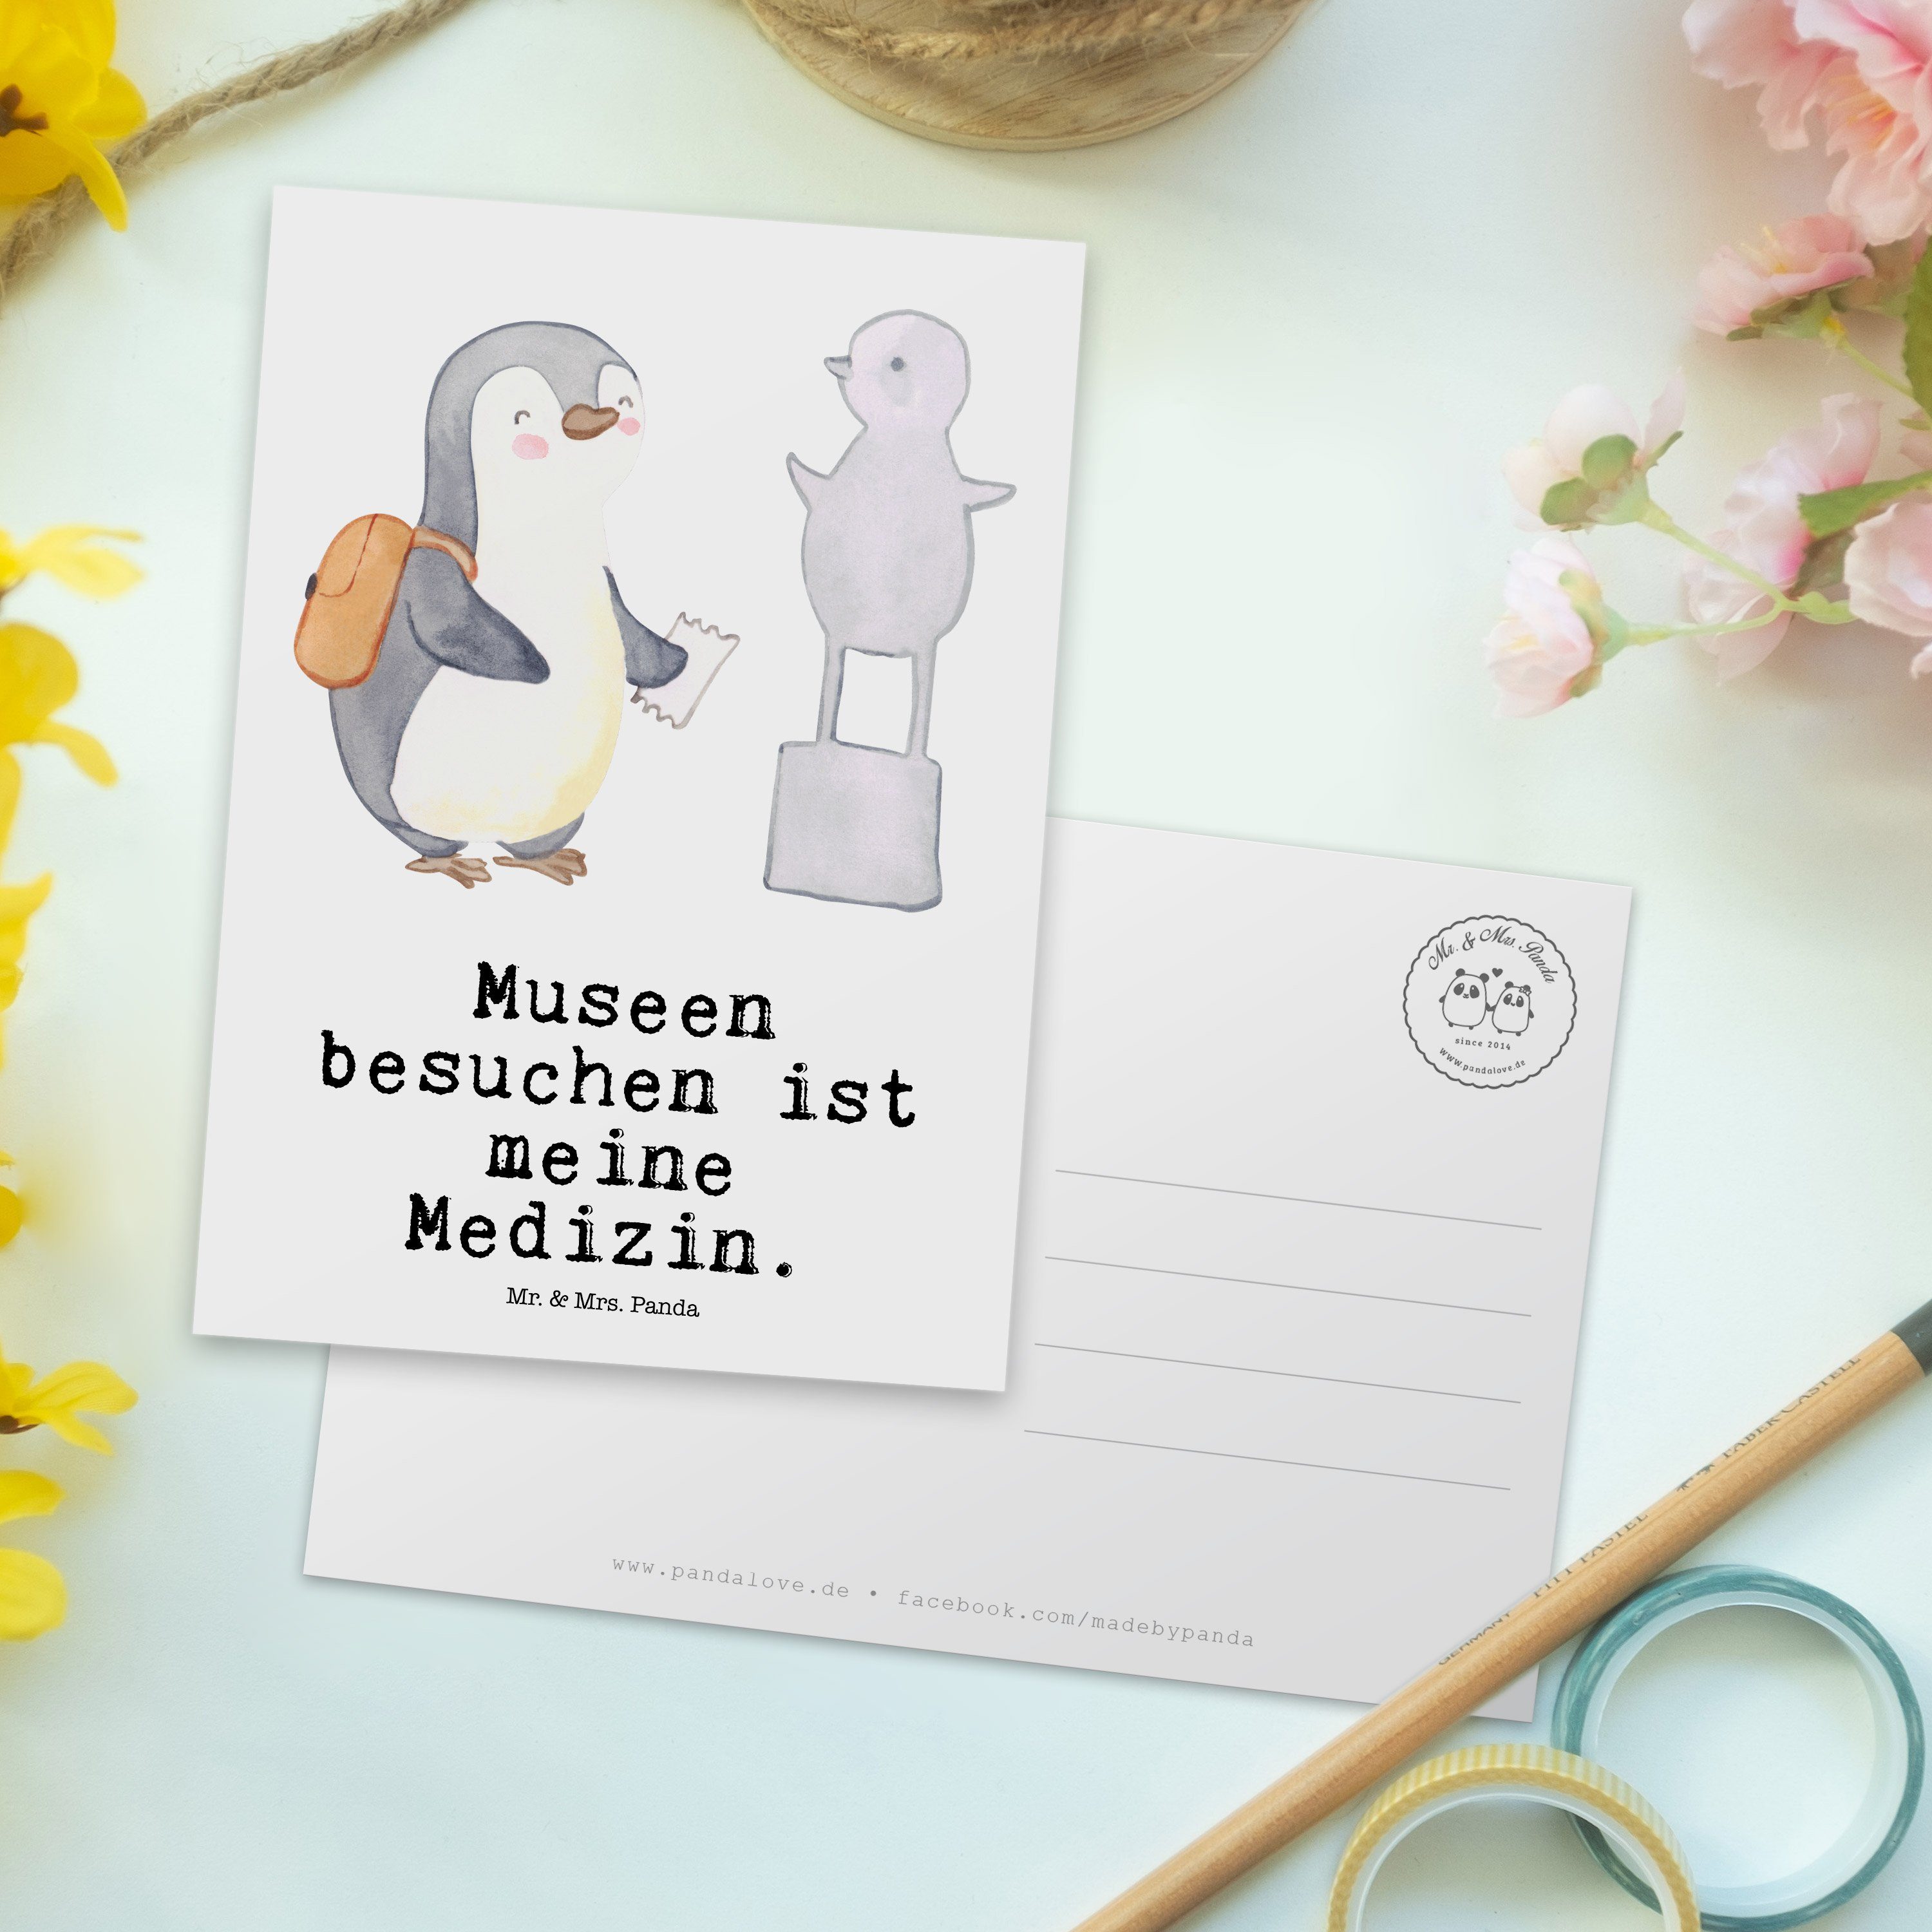 Mr. & Mrs. Panda Postkarte Medizin - besuchen - Dan Geschenk, Pinguin Weiß Ansichtskarte, Museum